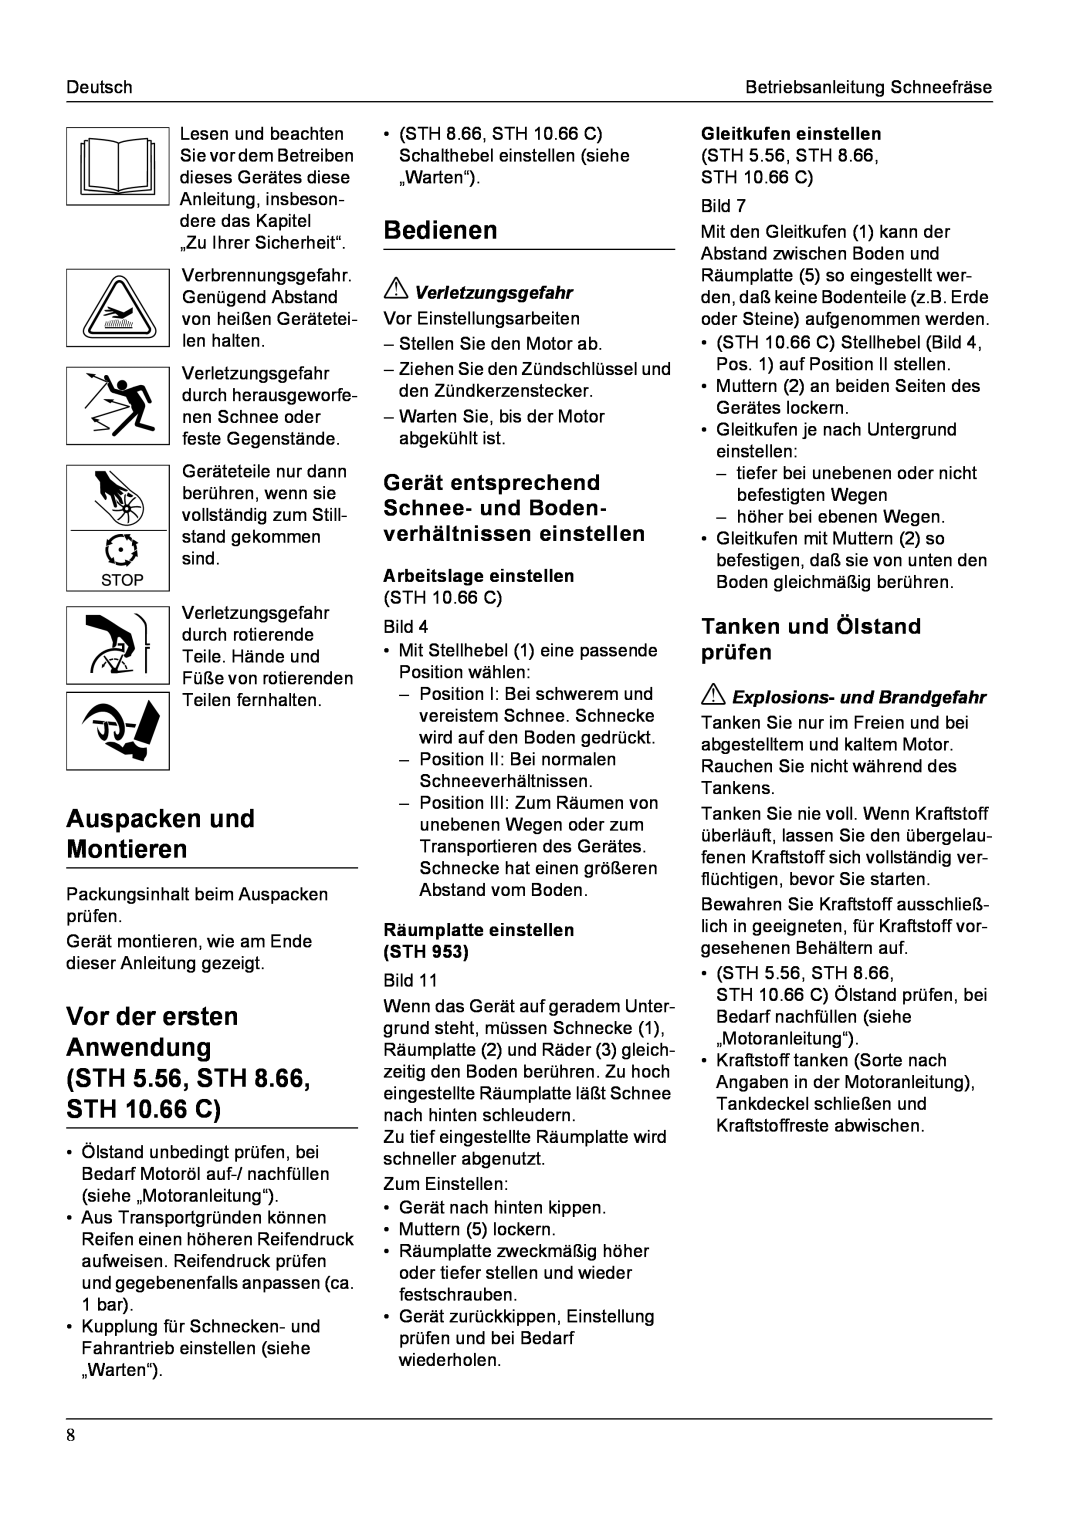 Karcher manual Auspacken und Montieren, STH 5.56, STH 8.66, STH 10.66 C, Bedienen, Vor der ersten Anwendung 